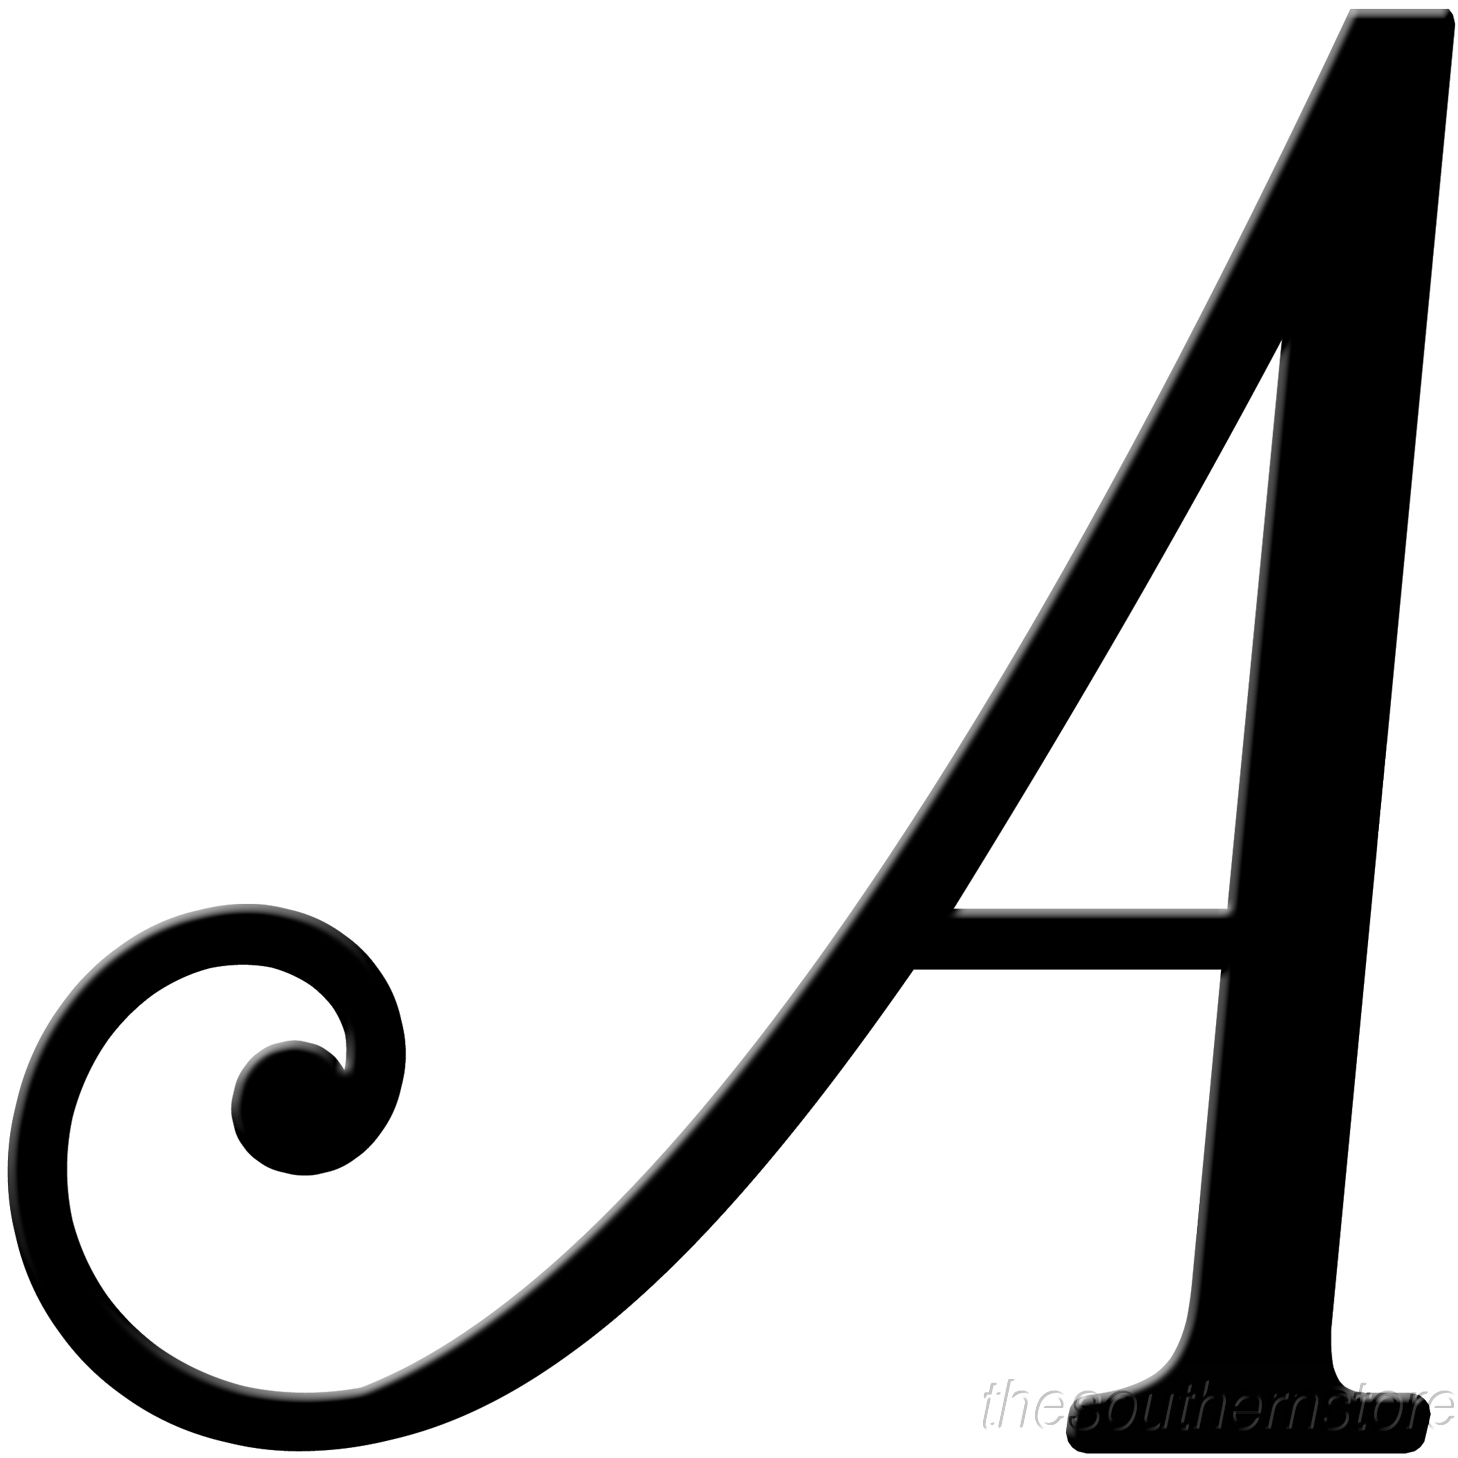 acq5GqxcM.jpeg (1458×1458) (With images) Fancy letters